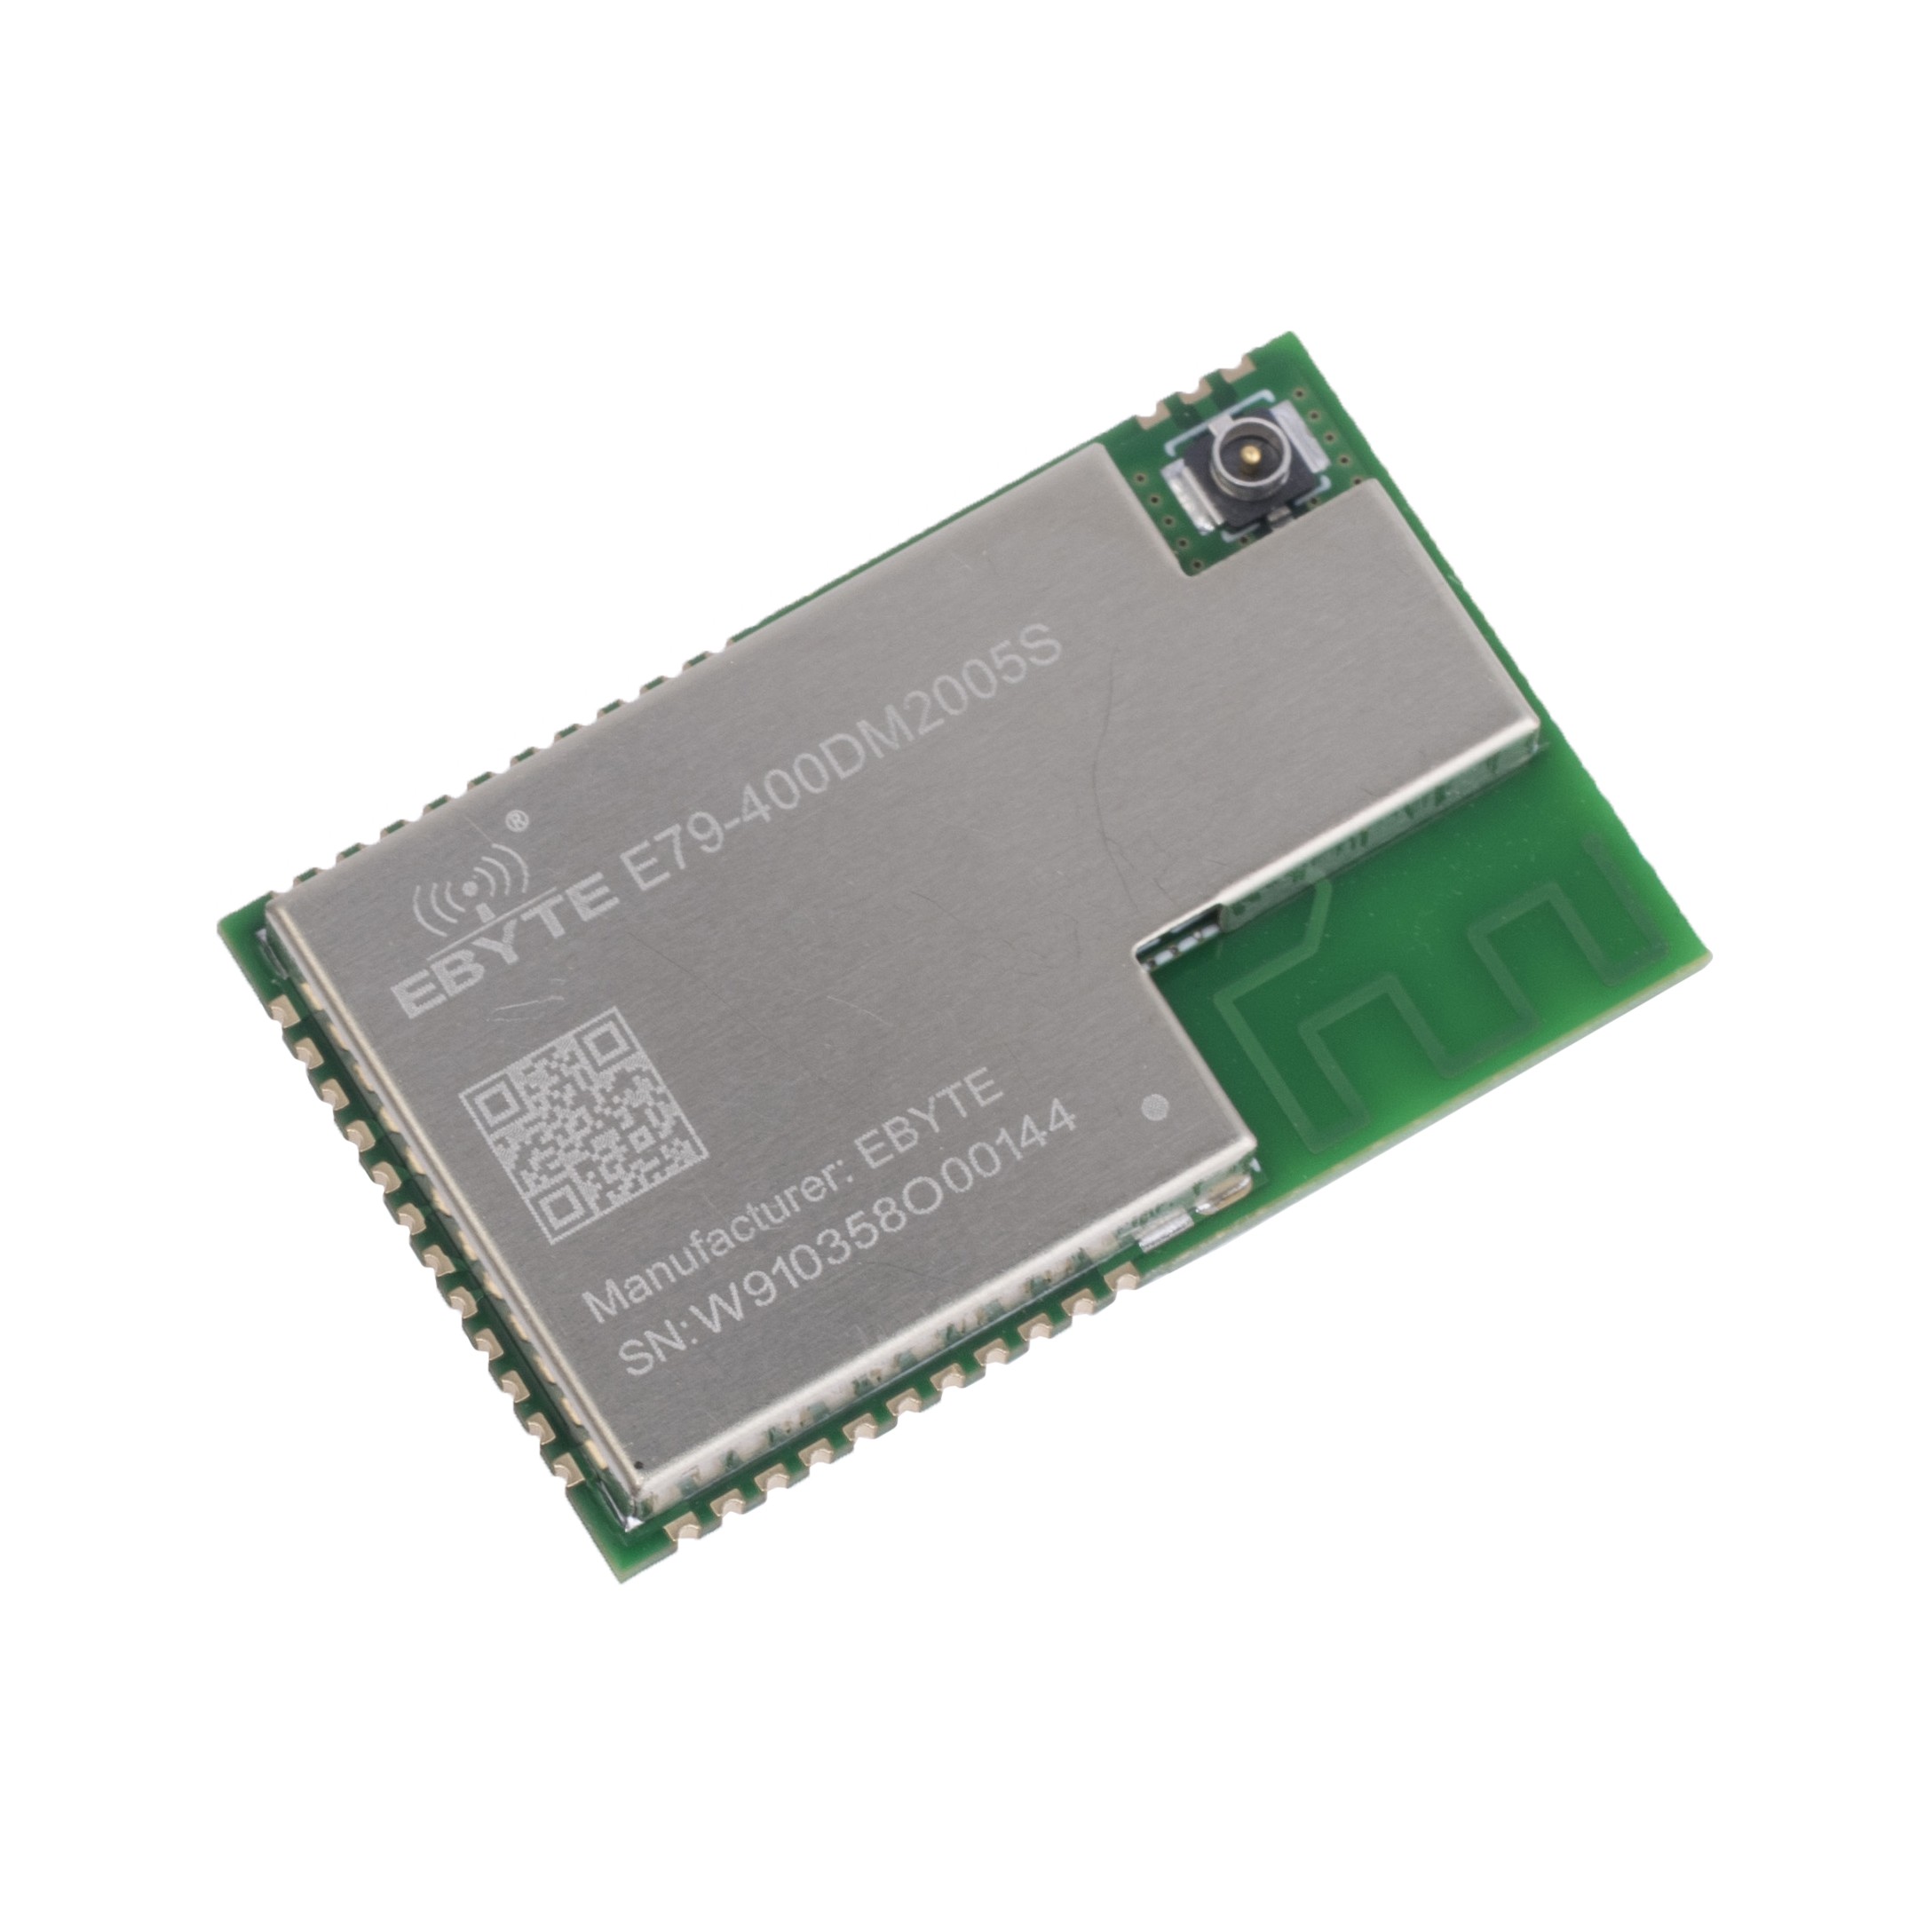 E79-400DM2005S (Ebyte) SoC module on chip CC1352 431-500MHz SMD